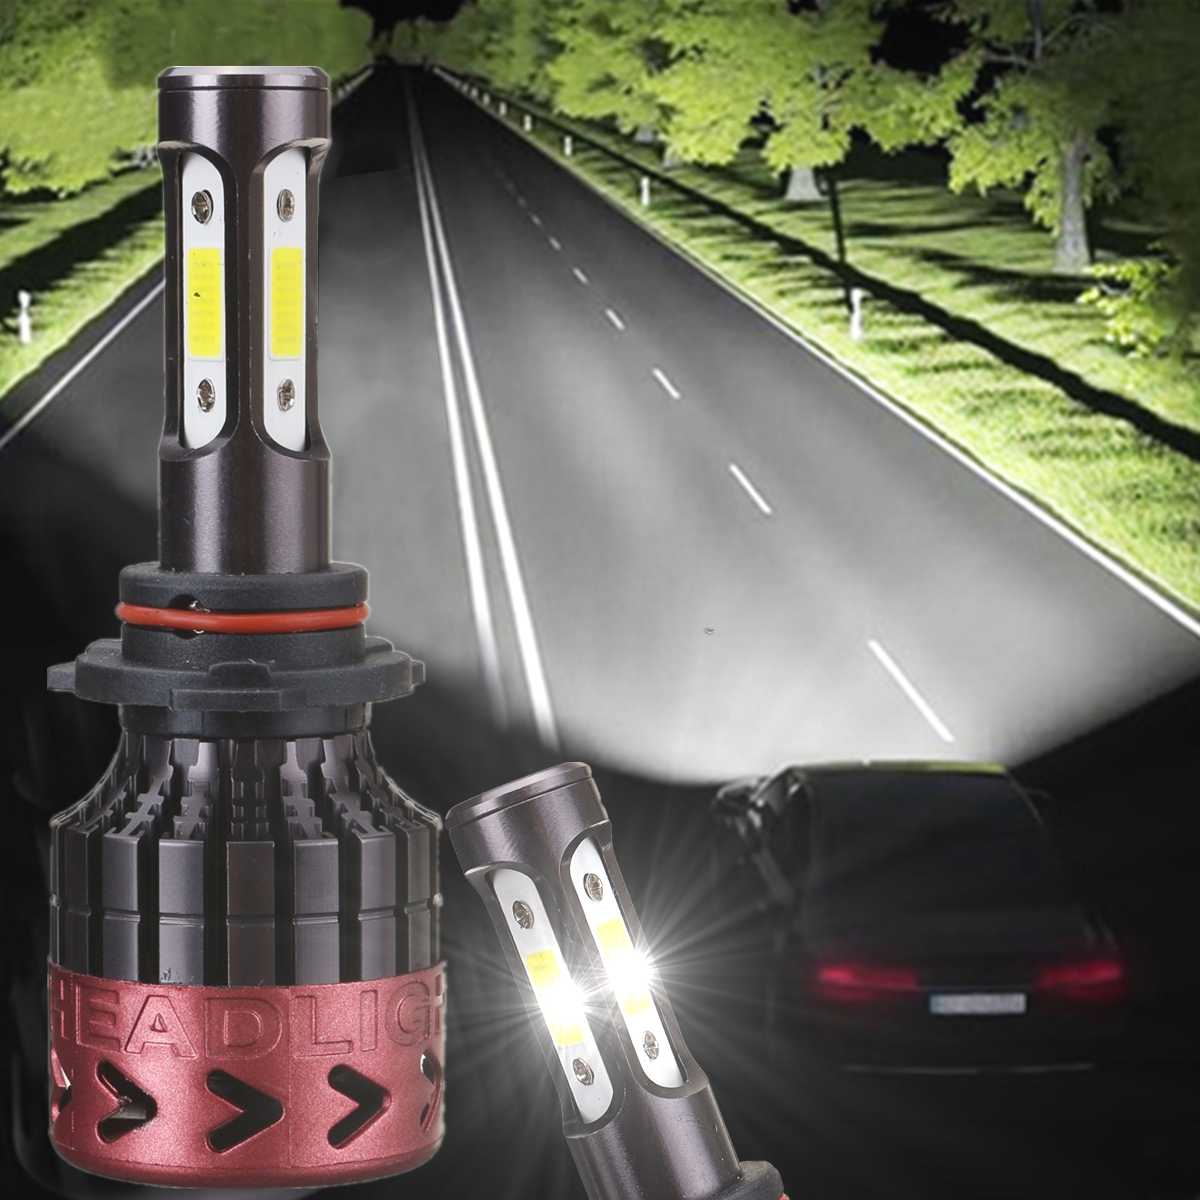 1Pair-9006-80W-8000LM-Car-LED-Headlight-Light-Lamp-Bulbs-High-Power-6000K-1215317